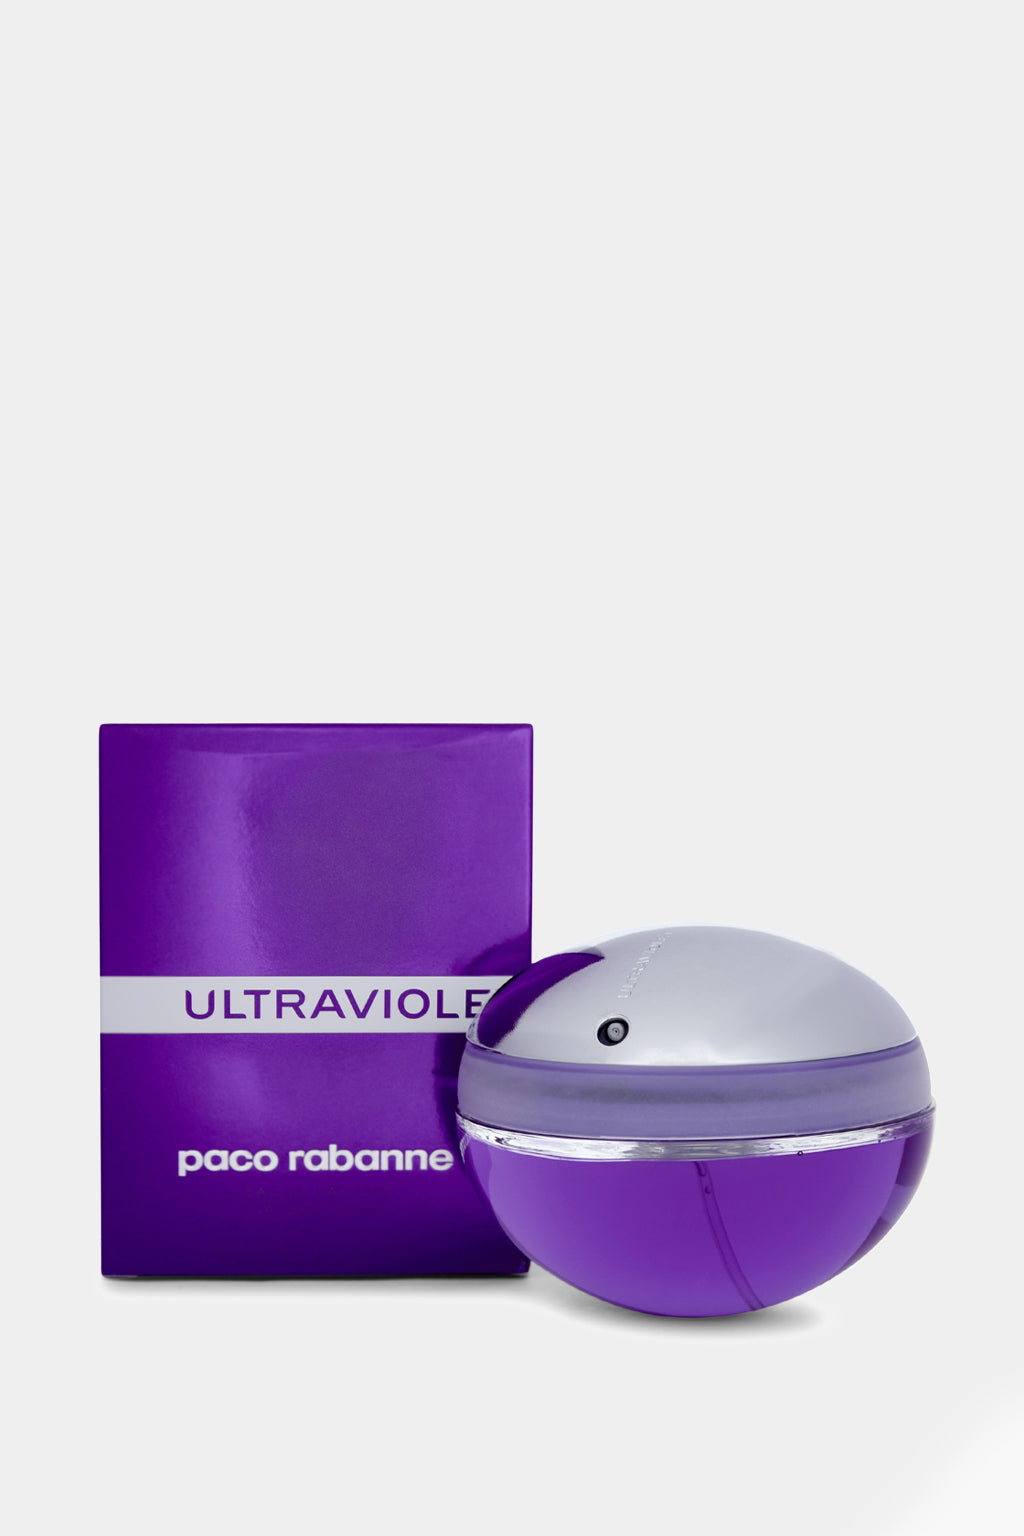 Paco Rabanne - Ultraviolet Eau de Parfum